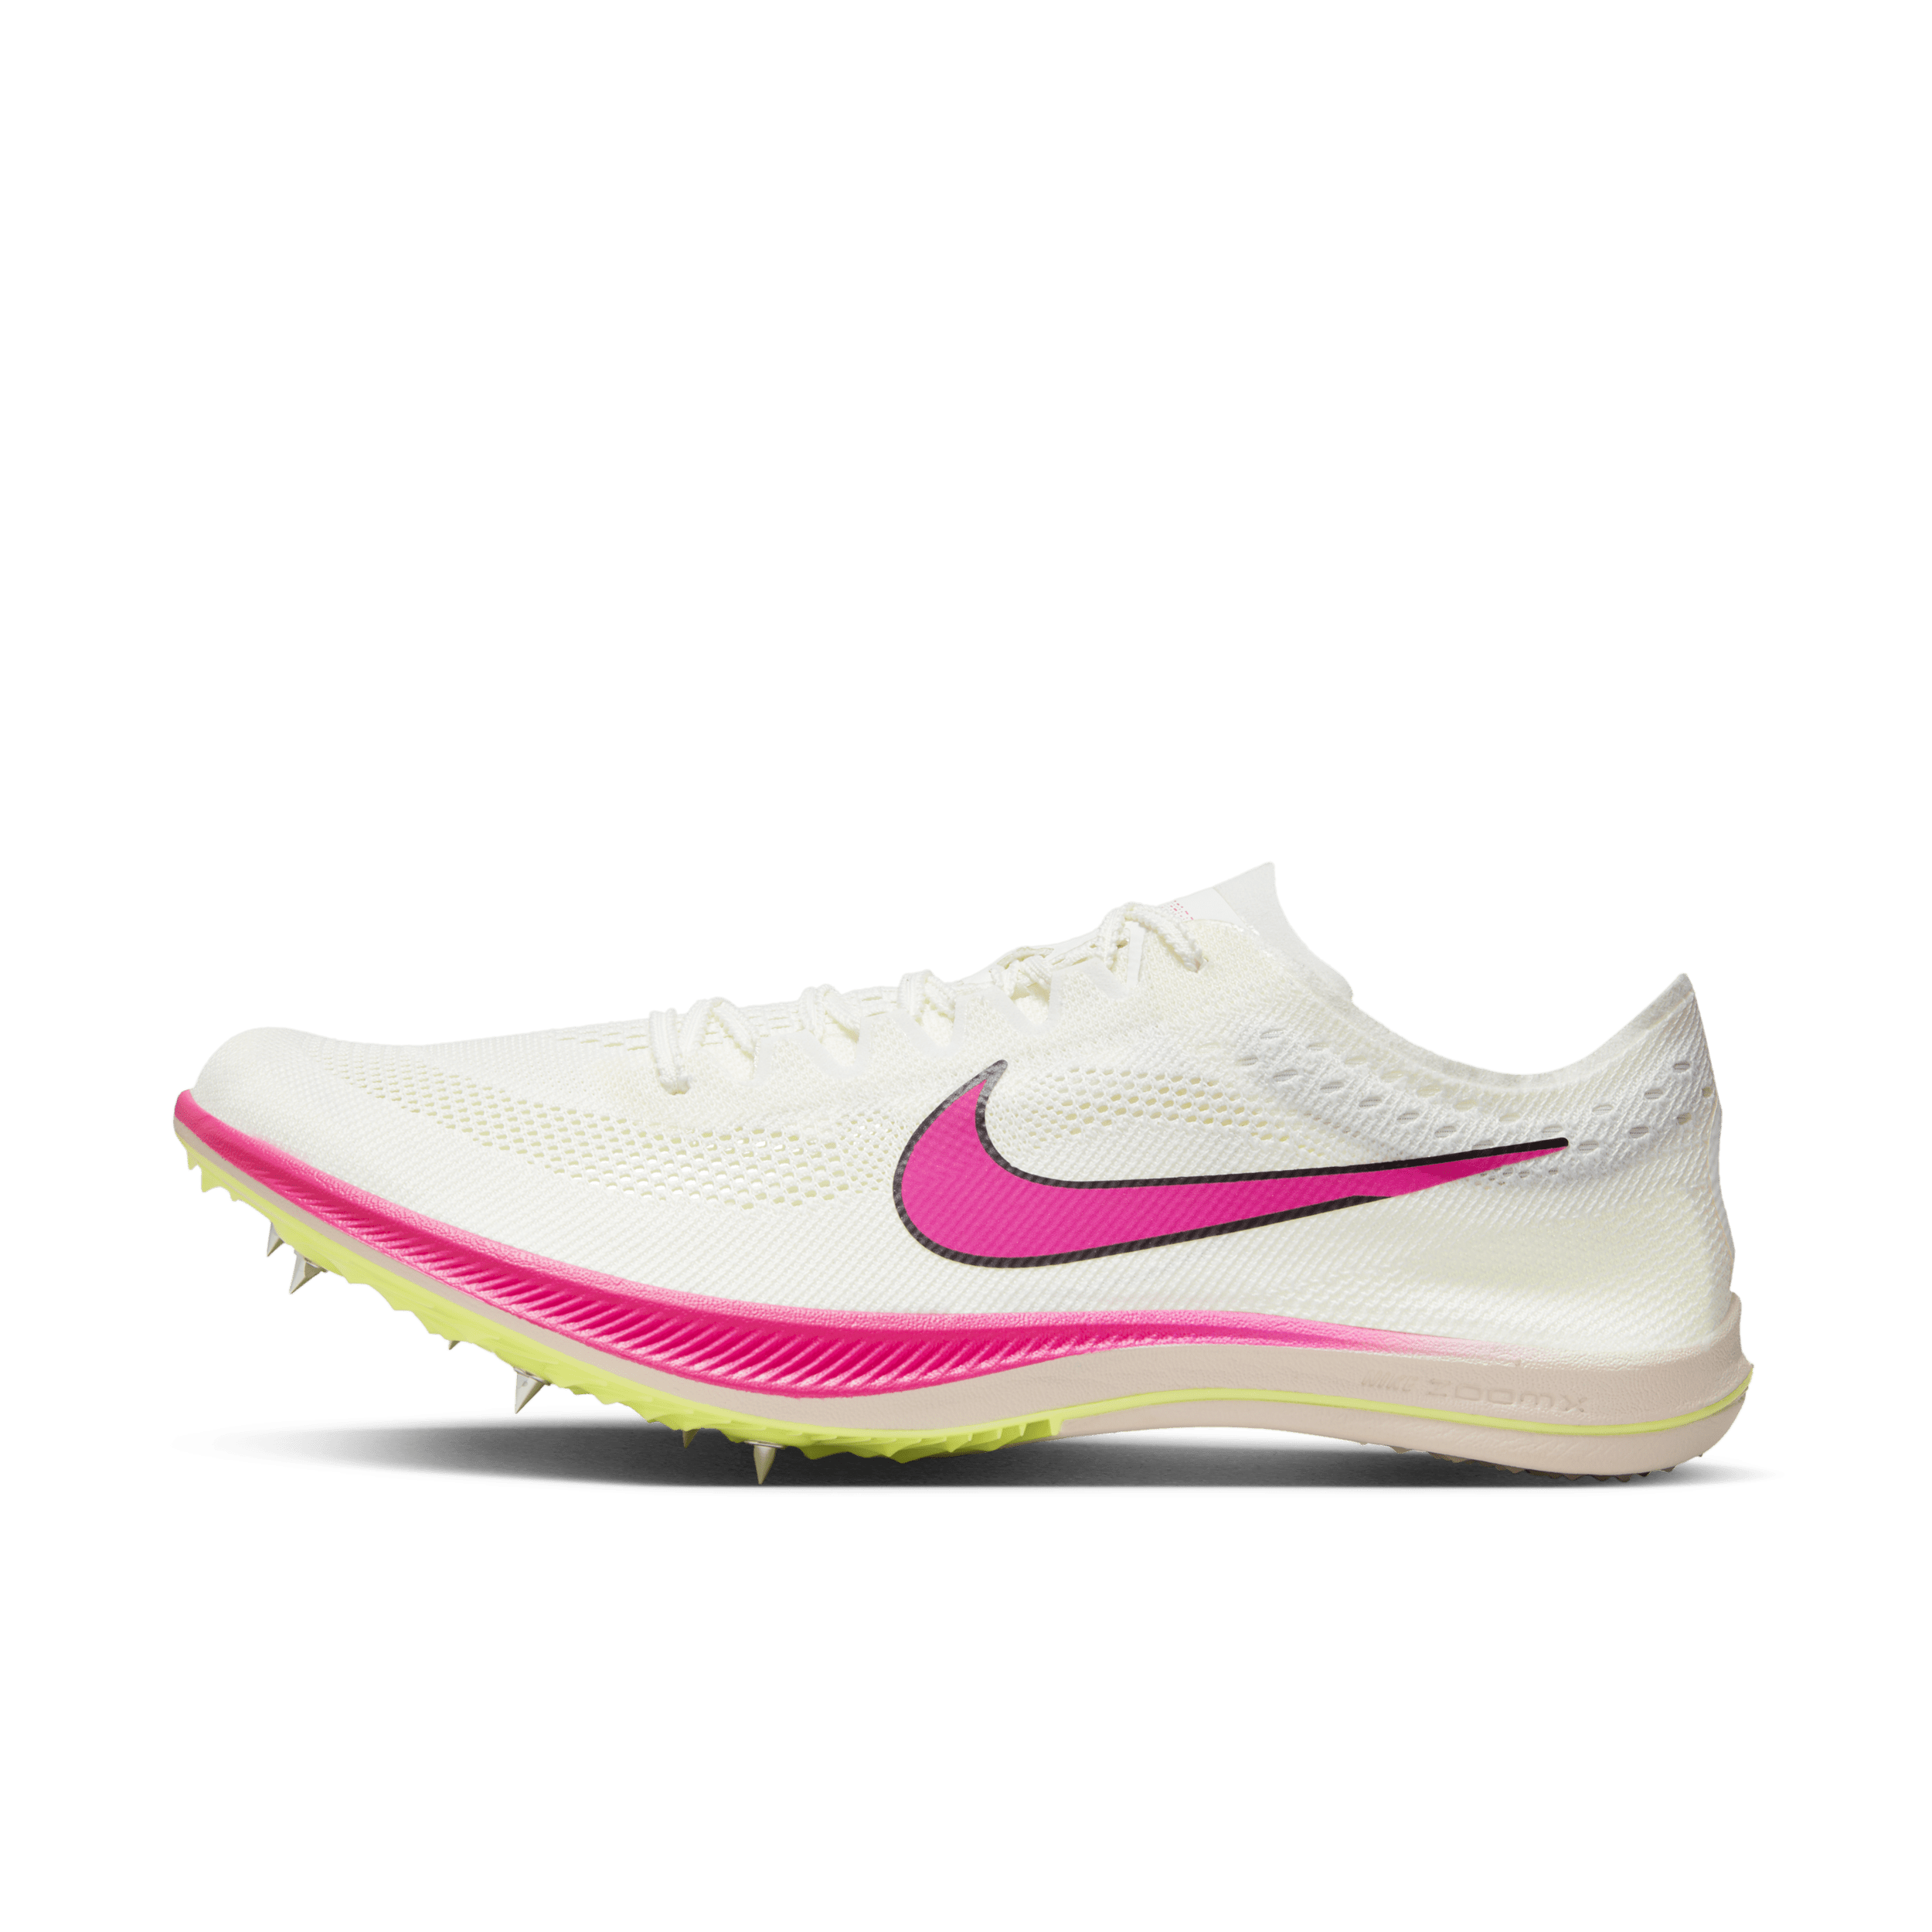 Nike ZoomX Dragonfly-pigsko til stadionatletik og distanceløb - hvid